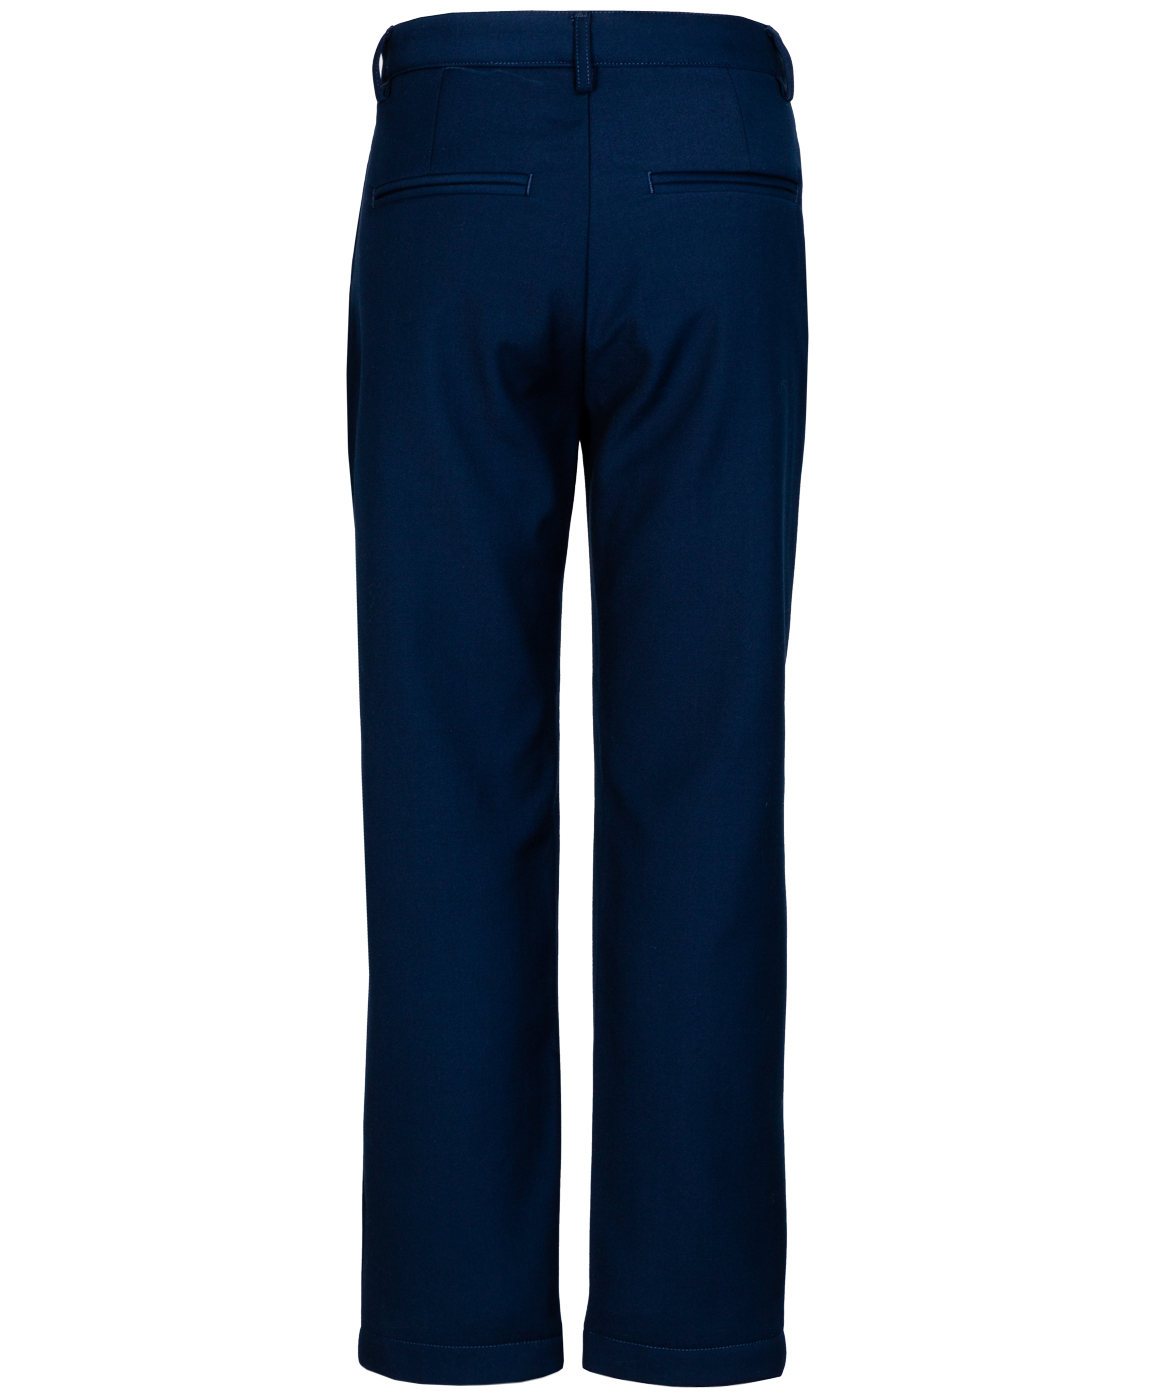 Синие утепленные брюки Button Blue 219BBBS63021000, размер 128, цвет синий - фото 3